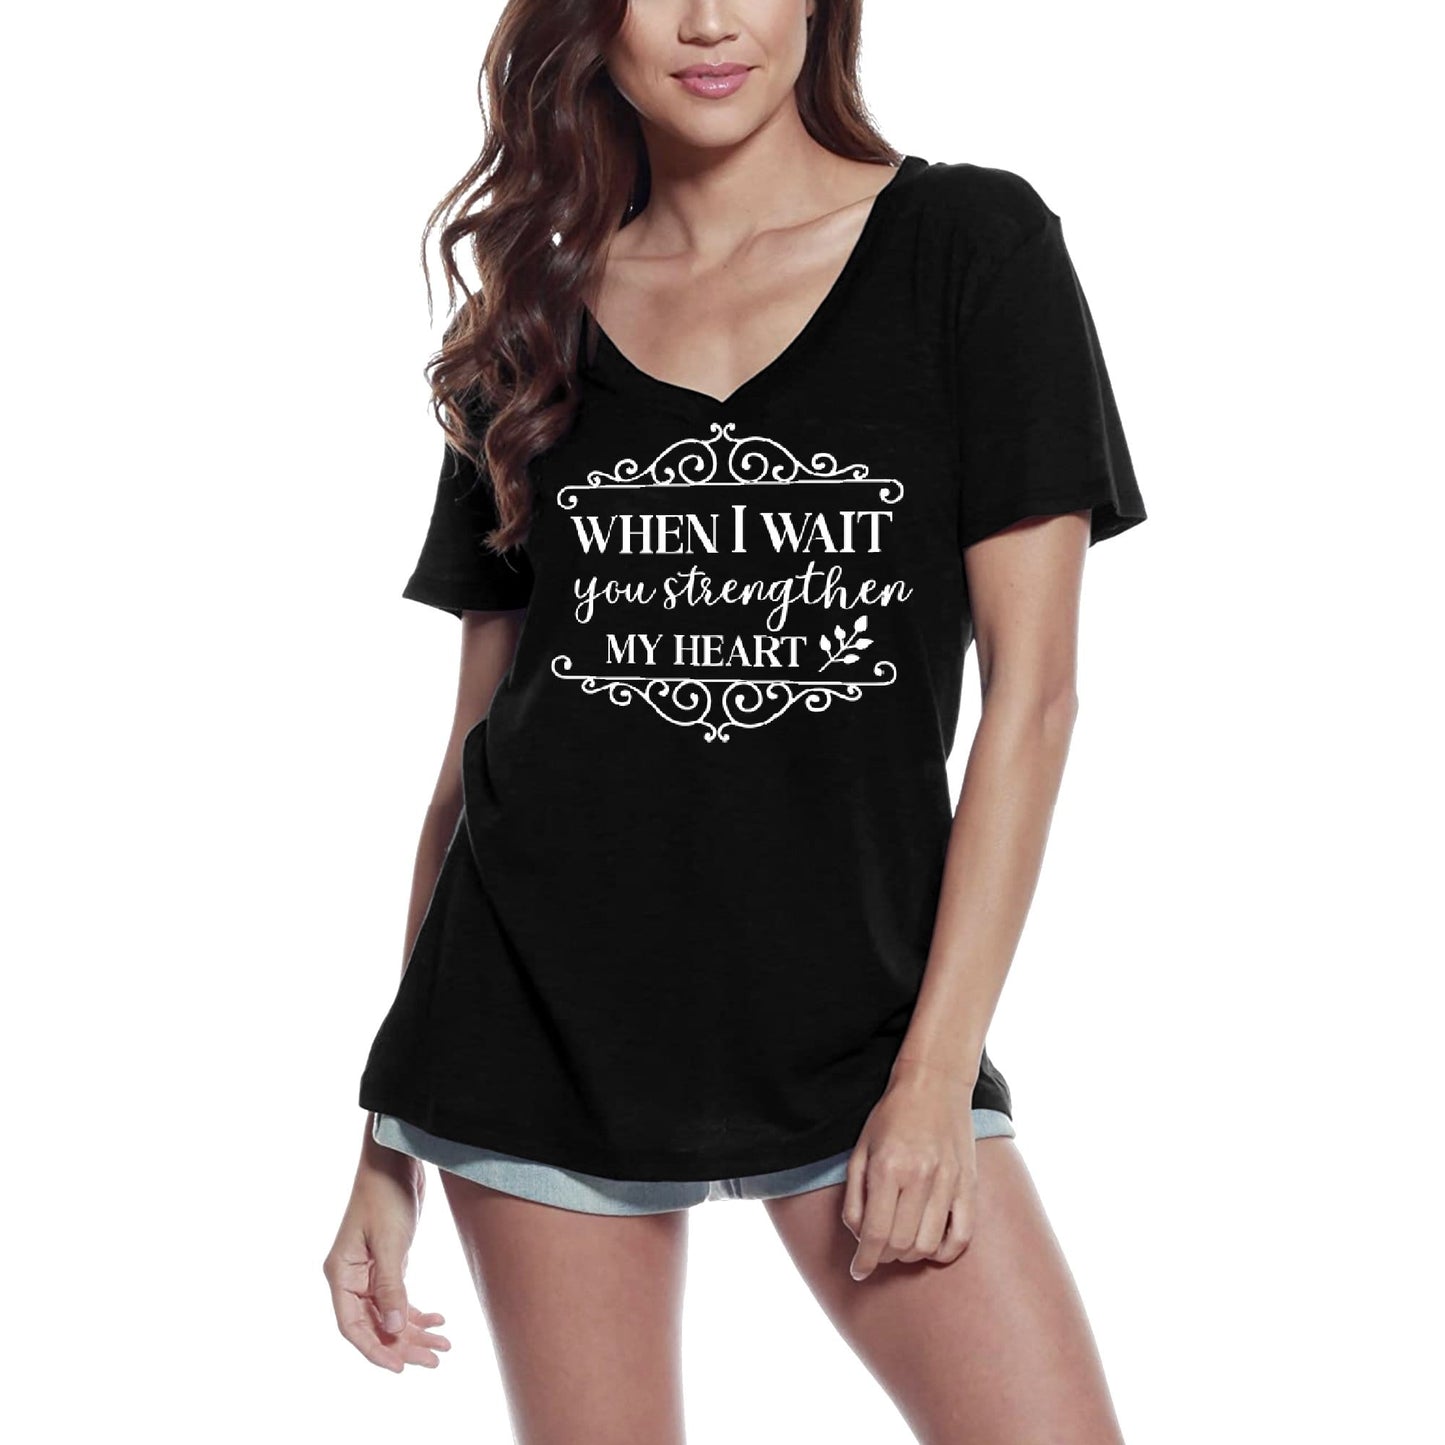 ULTRABASIC Women's T-Shirt When I Wait You Strengthen My Heart - Short Sleeve Tee Shirt Tops